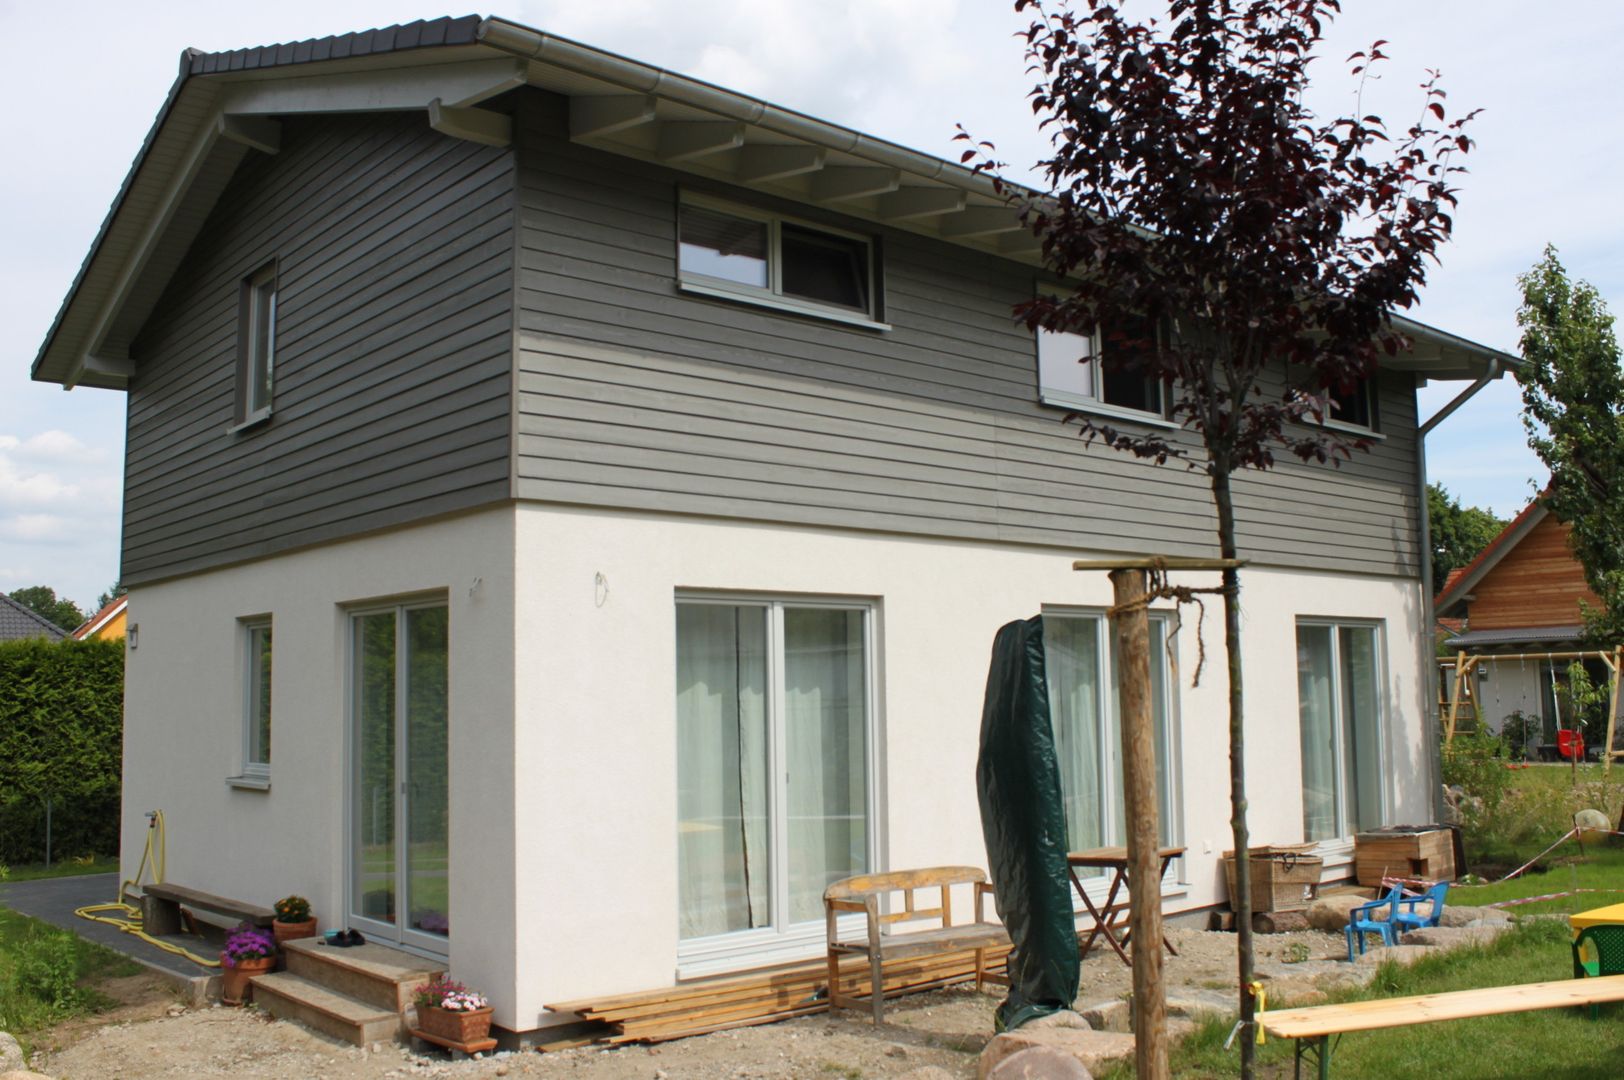 Wohngesundes Holzhaus - modern und kostengünstig, Neues Gesundes Bauen Neues Gesundes Bauen Moderne Häuser